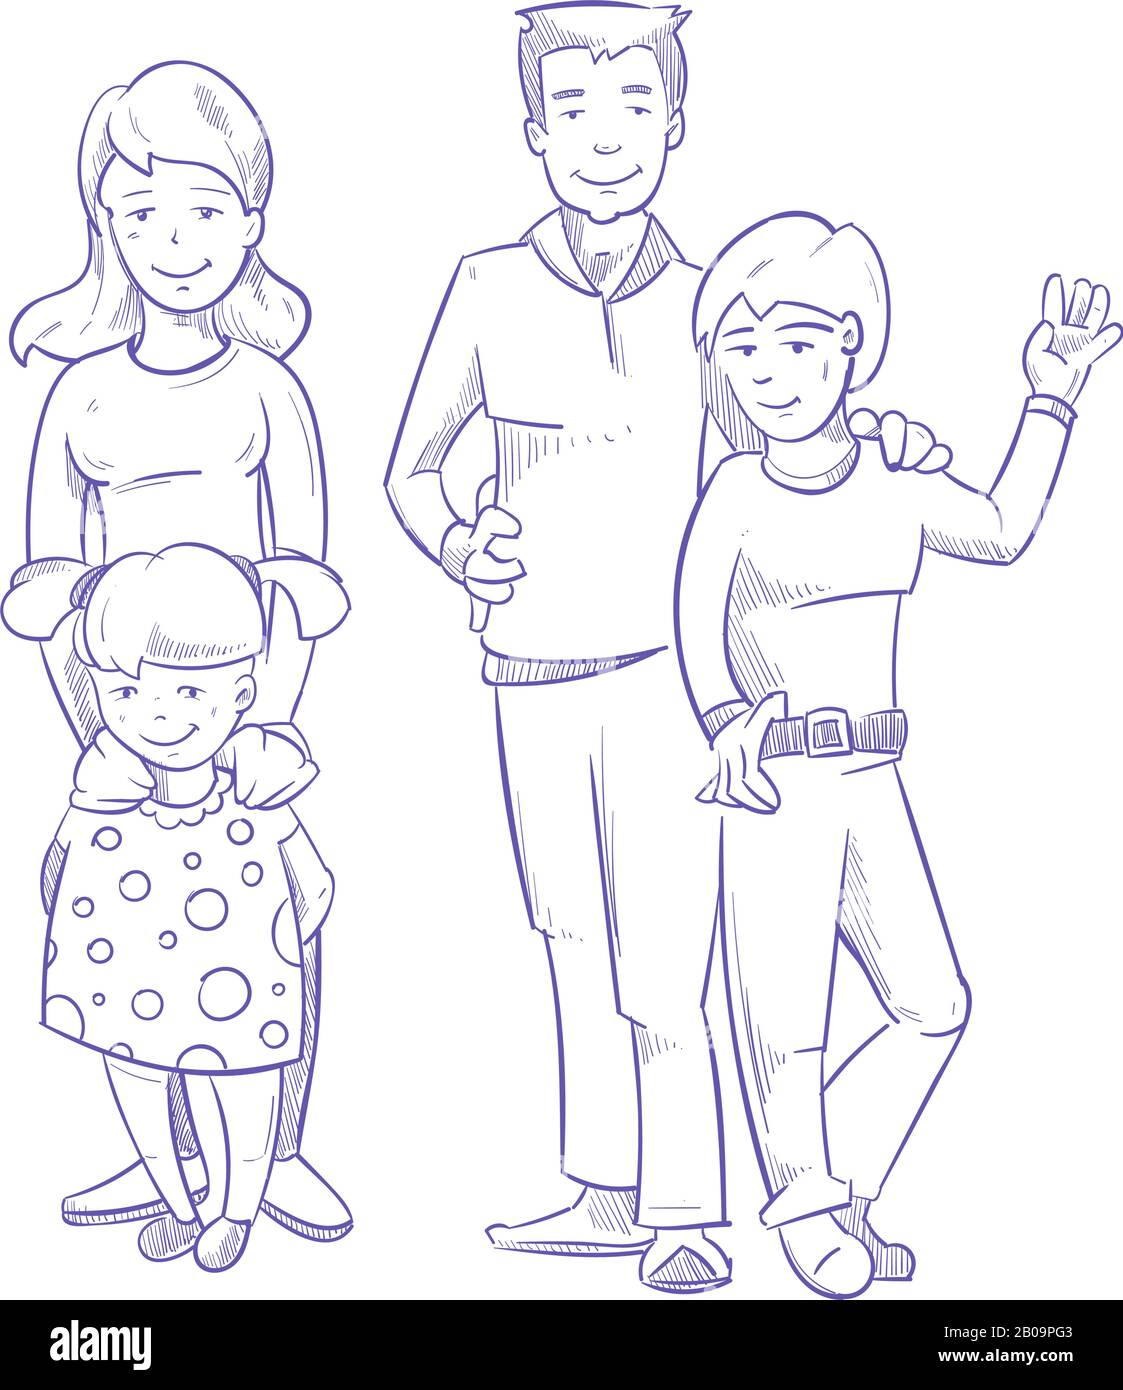 Рисунок на тему семья легко. Семья рисунок. Семья рисунок карандашом для детей. Рисунок семьи 5 человек. Рисунок на тему семья карандашом.